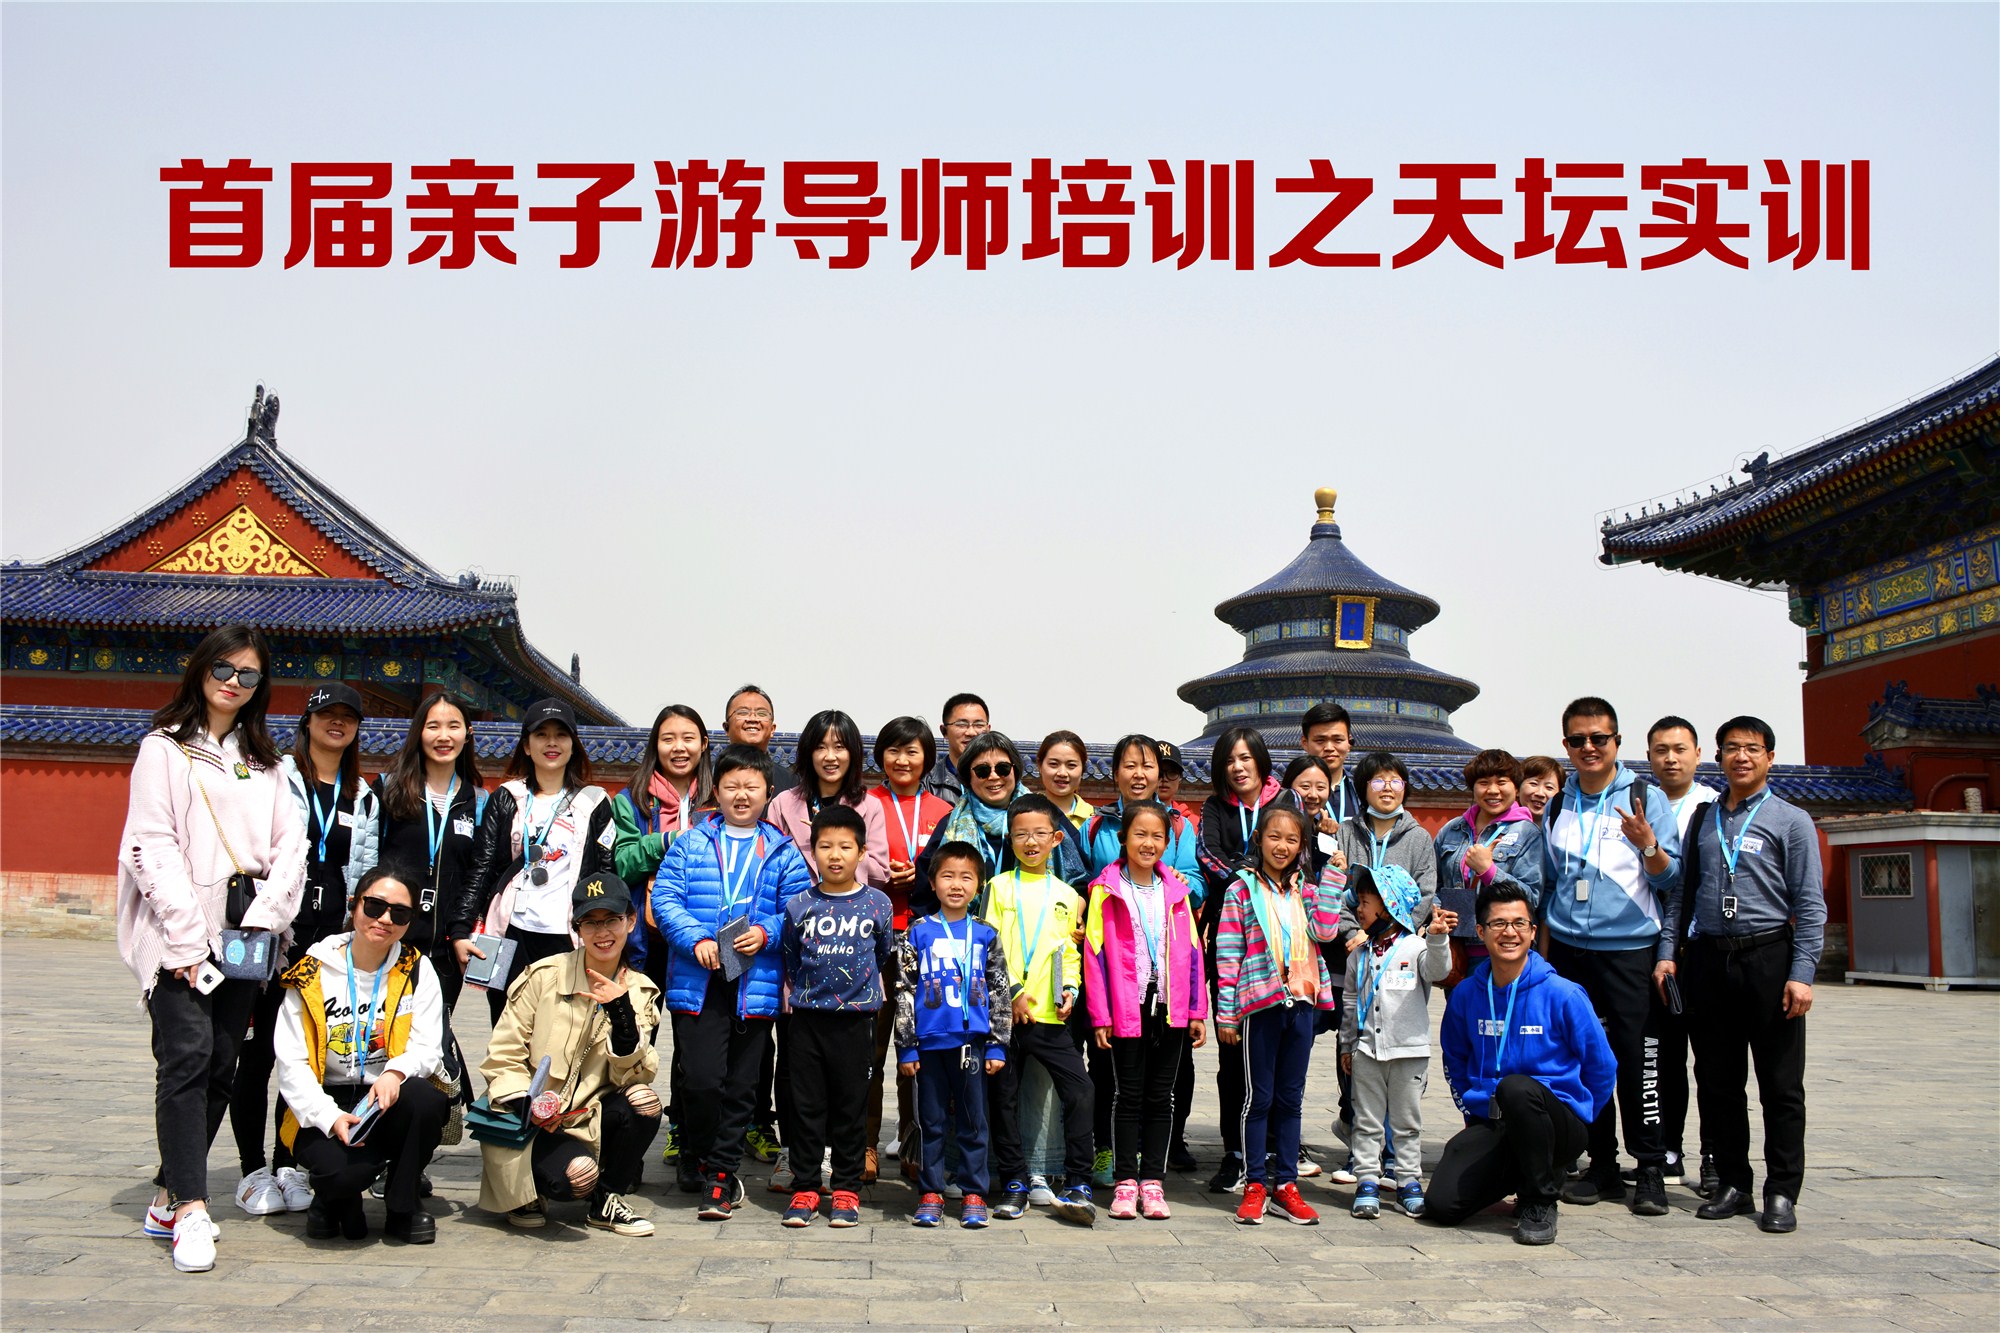 2019年第二期亲子游导师培训班将于6月下旬在京开课